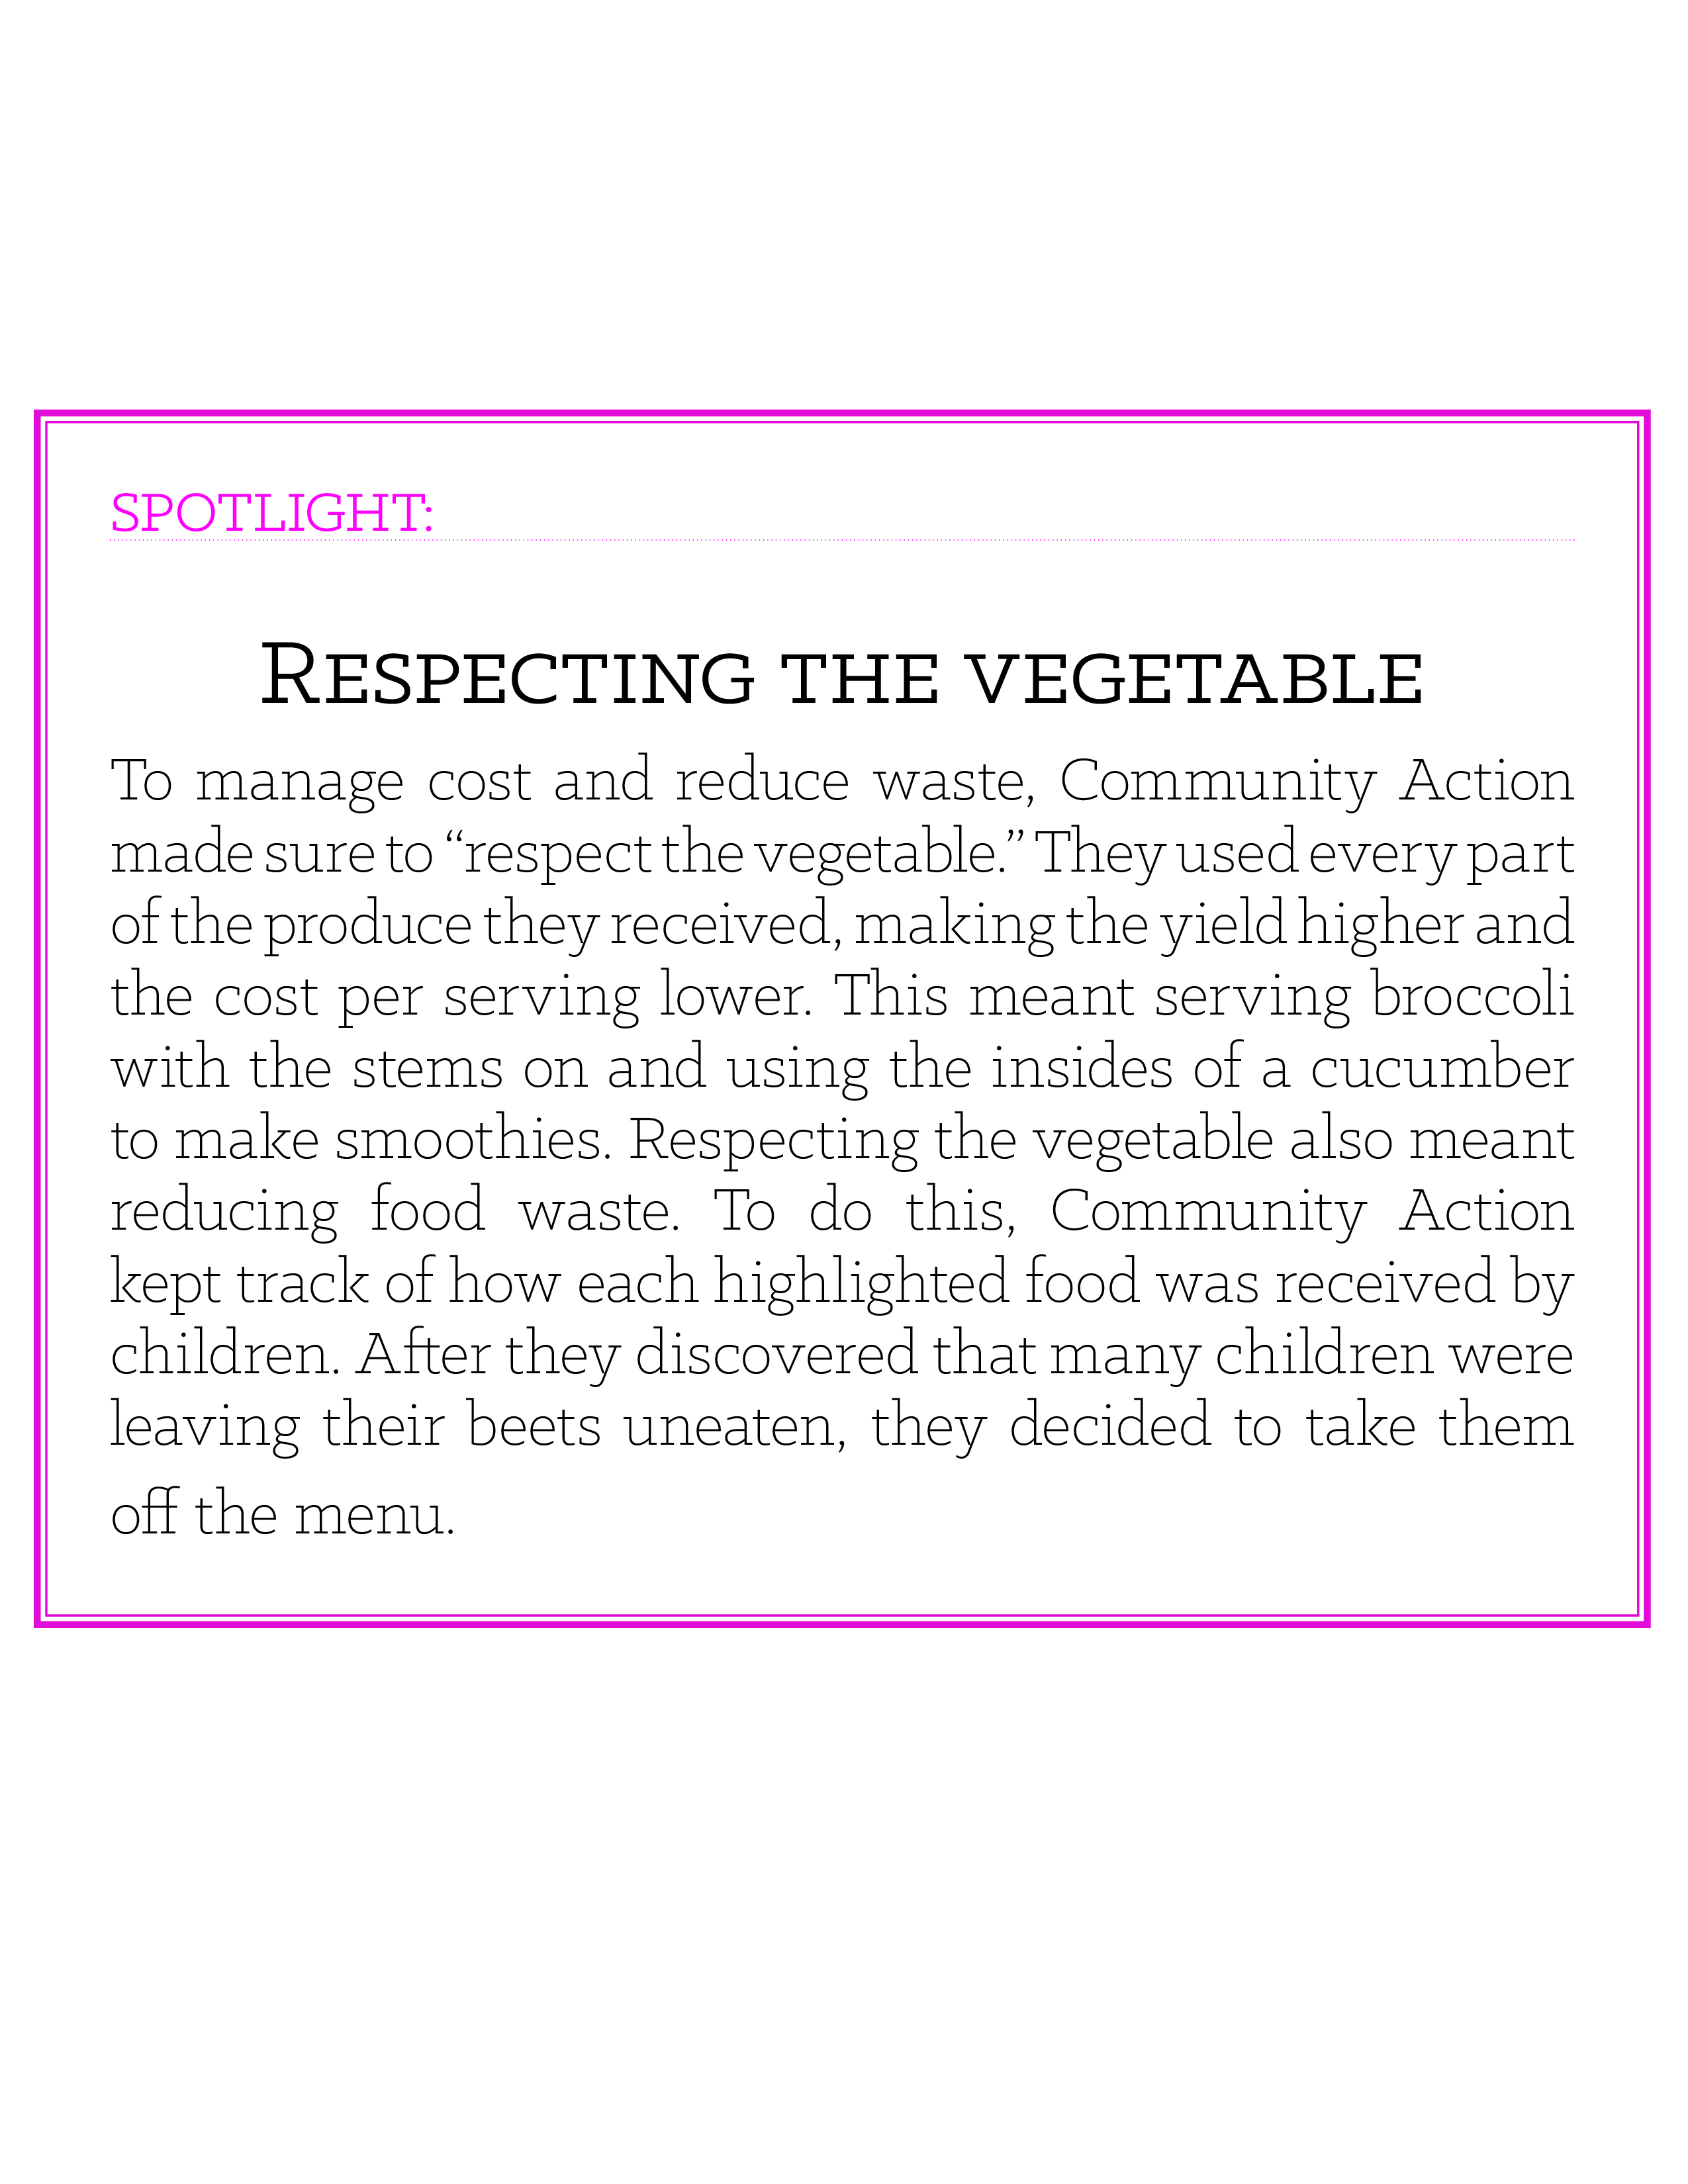 Spotlight box: Respecting the Vegetable